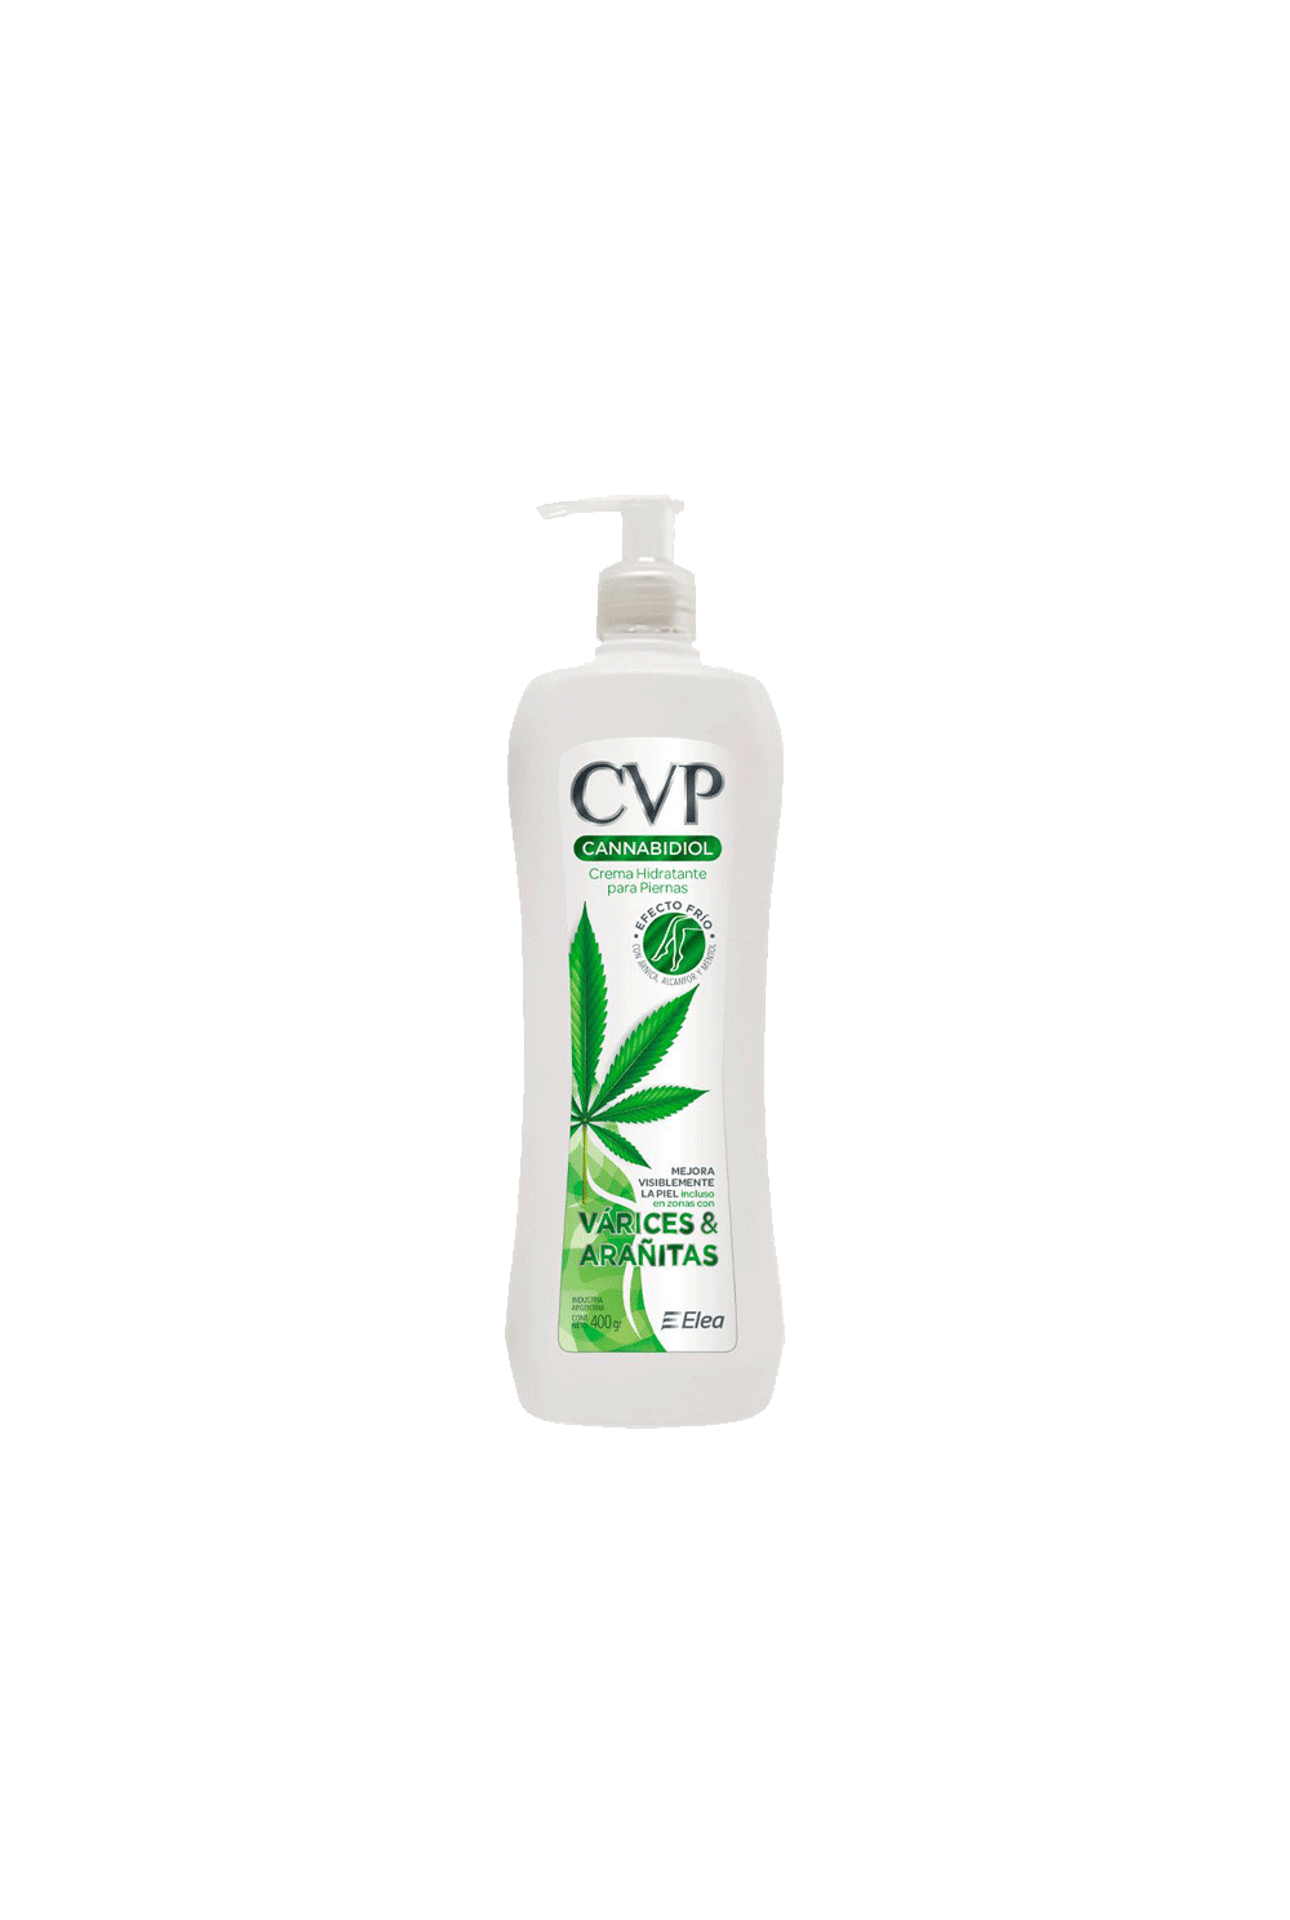 CVP-Cvp-Cannabidiol-Crema-x-400-Grs-7796285290733_img1